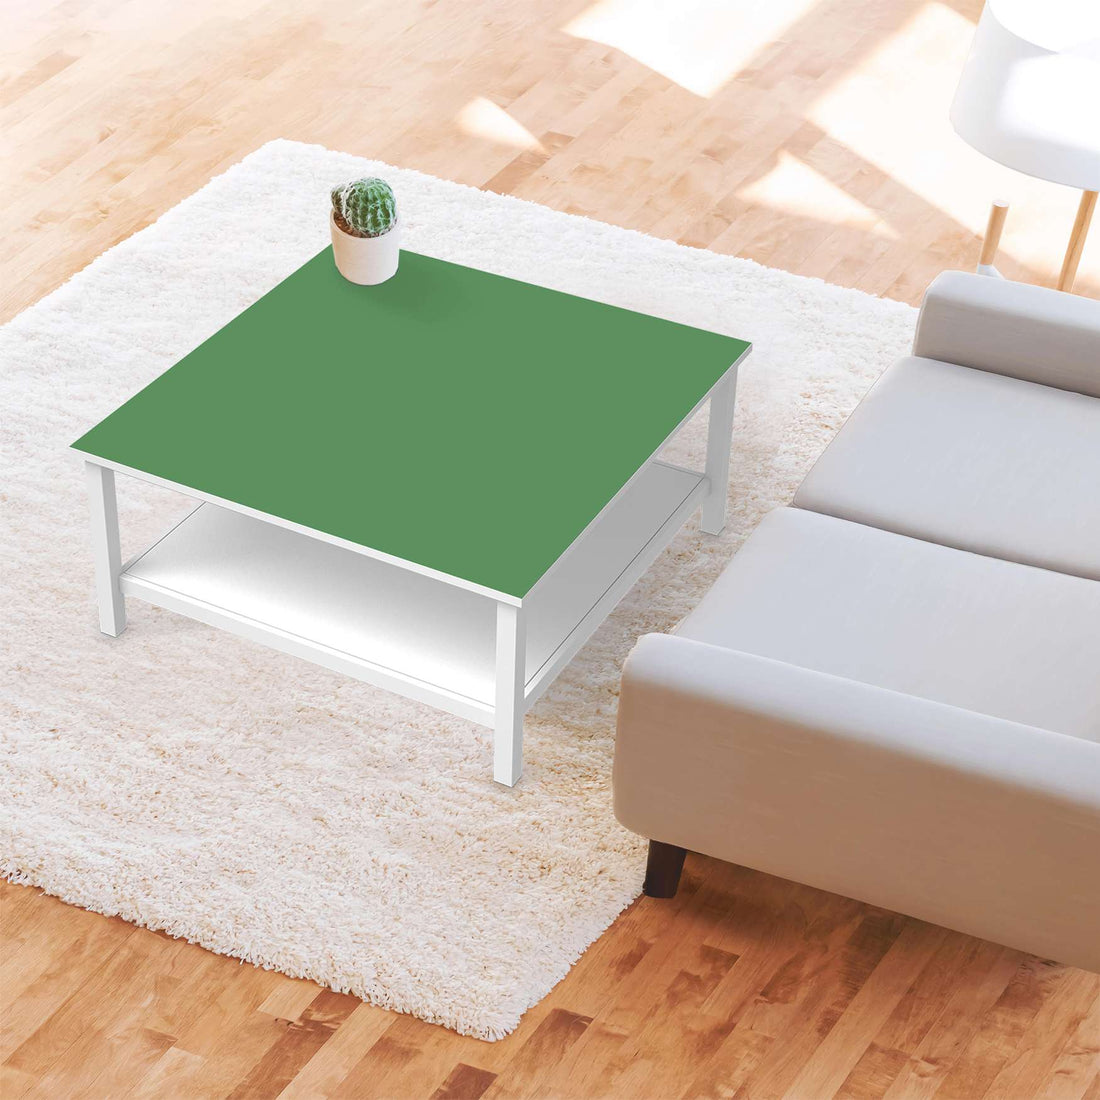 Klebefolie für Möbel Grün Light - IKEA Hemnes Couchtisch 90x90 cm - Wohnzimmer